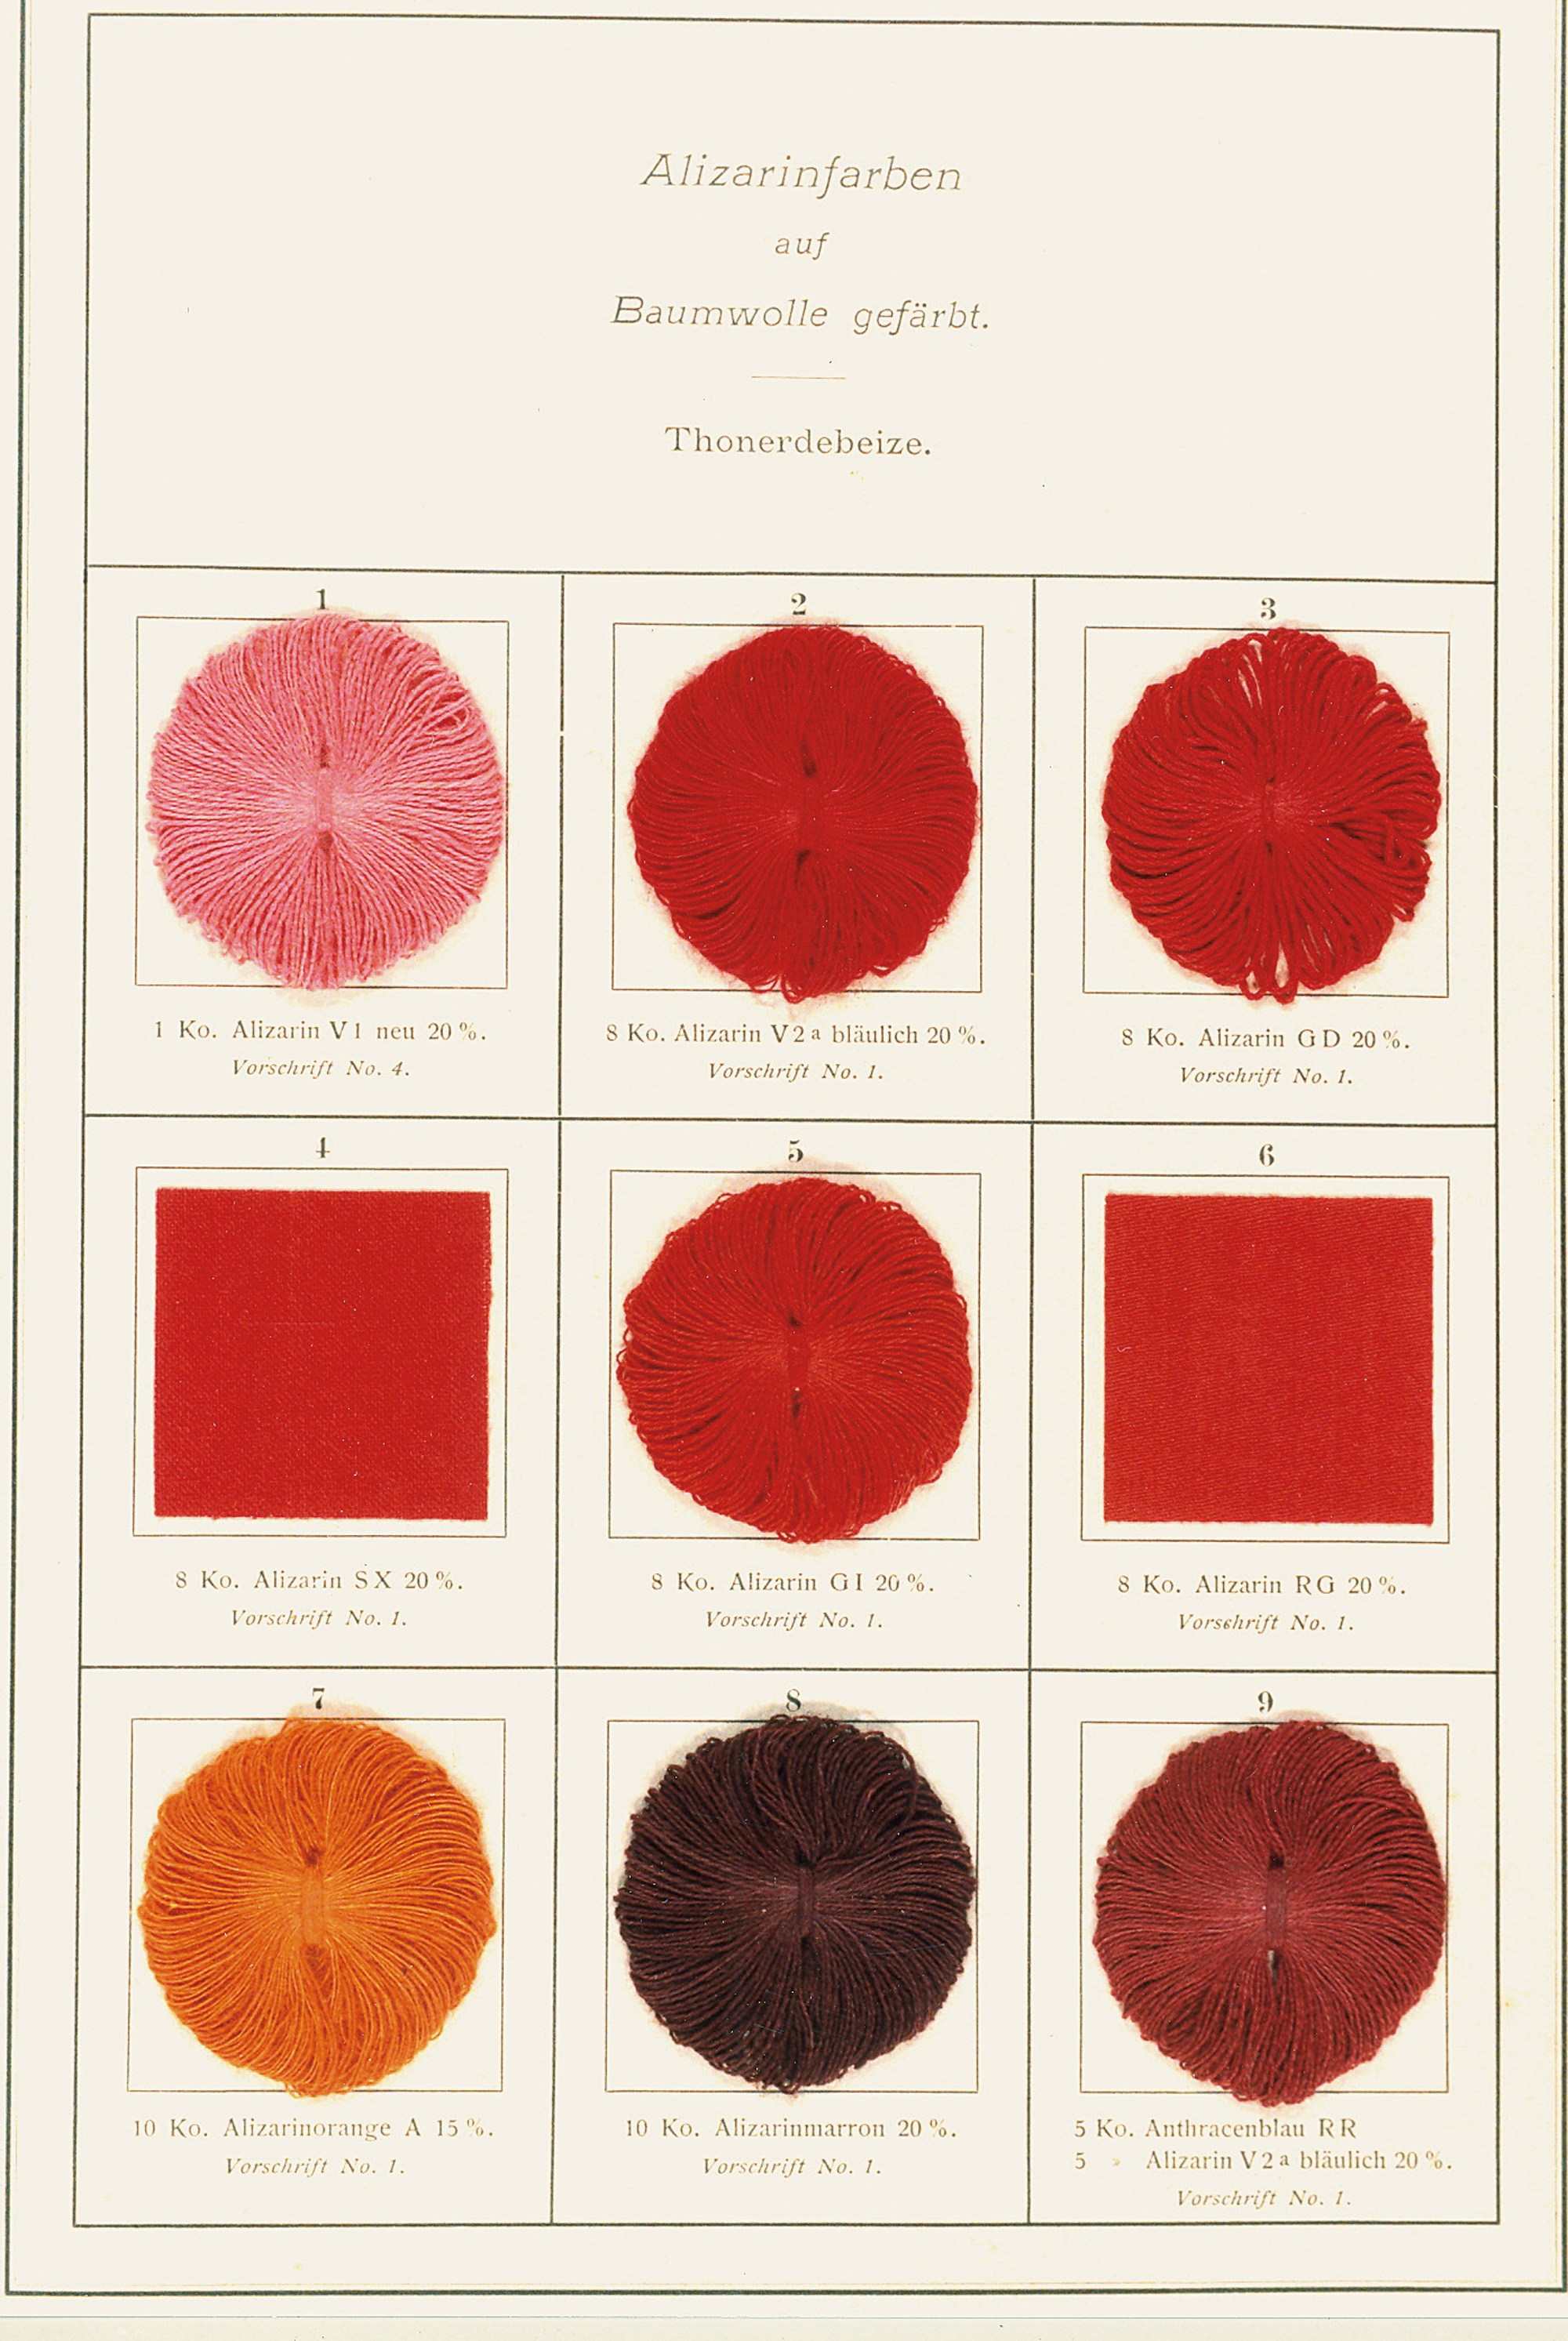 historická dobová vzorkovnice barev, převládají červené odstíny